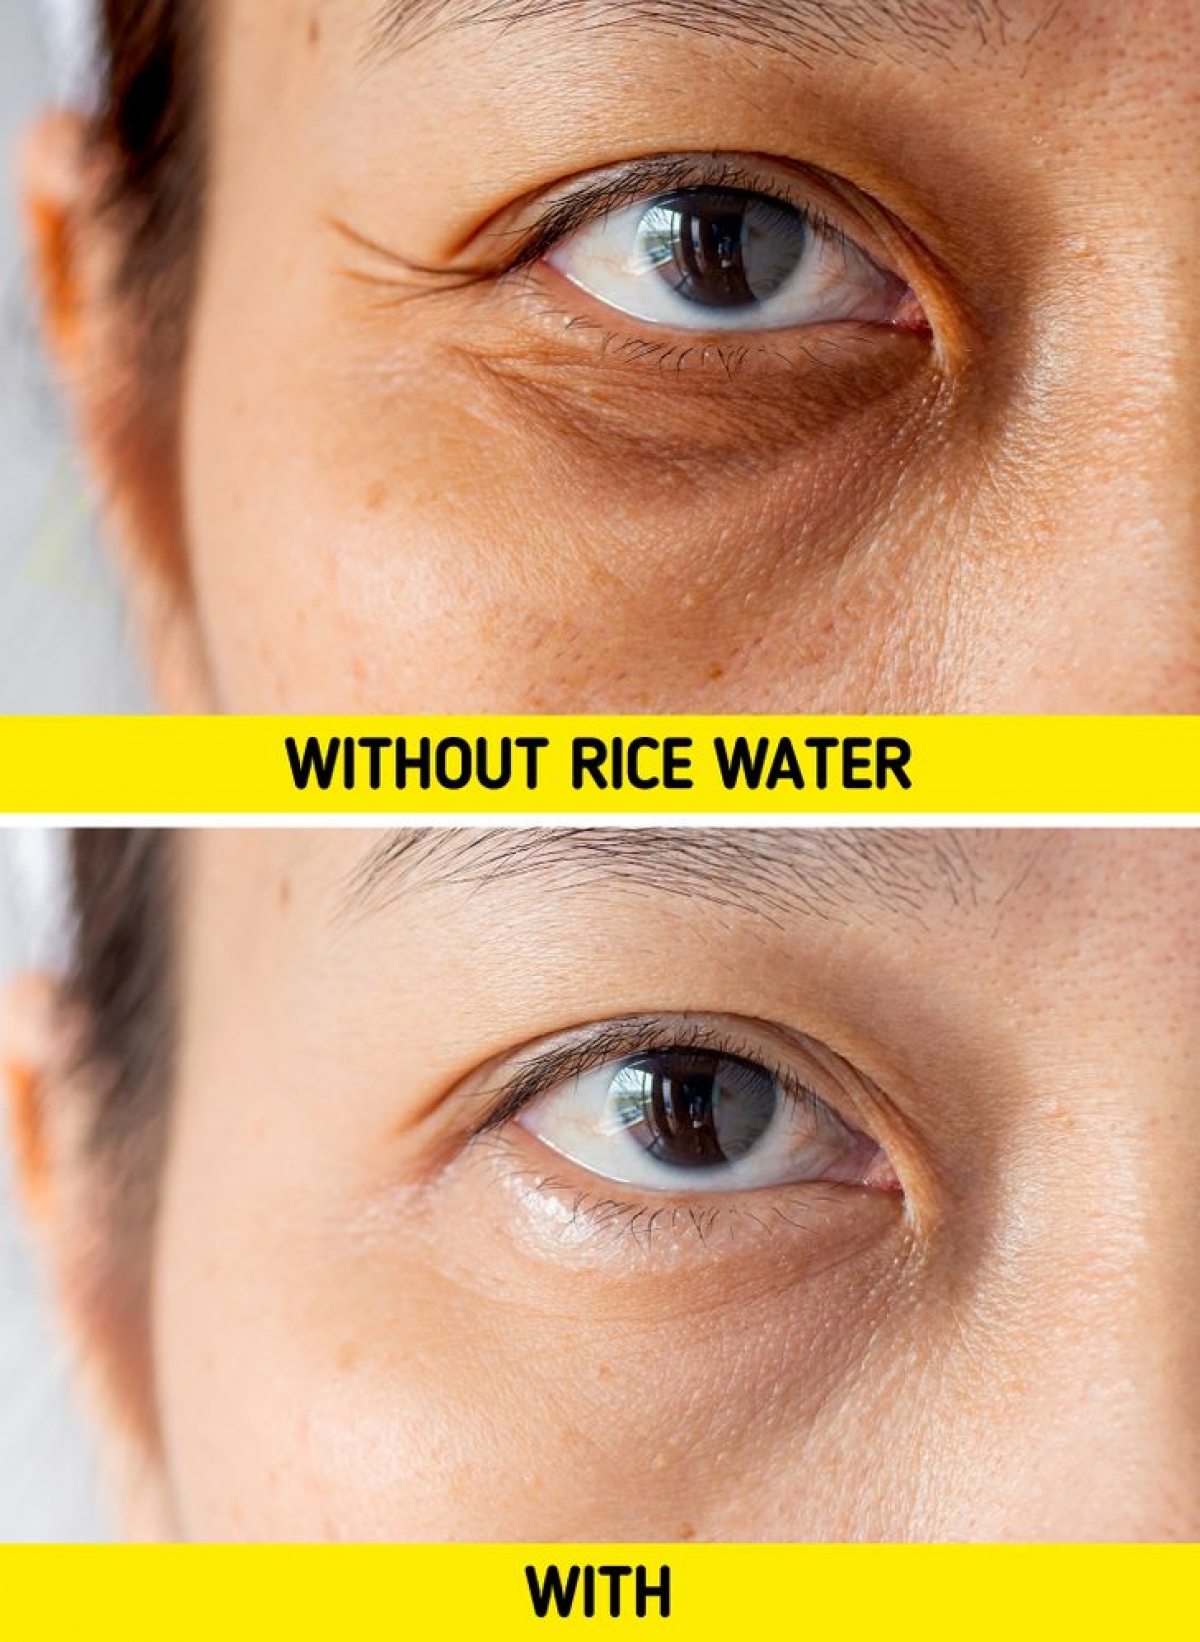 Lý do phụ nữ Nhật luôn yêu chuộng nước gạo